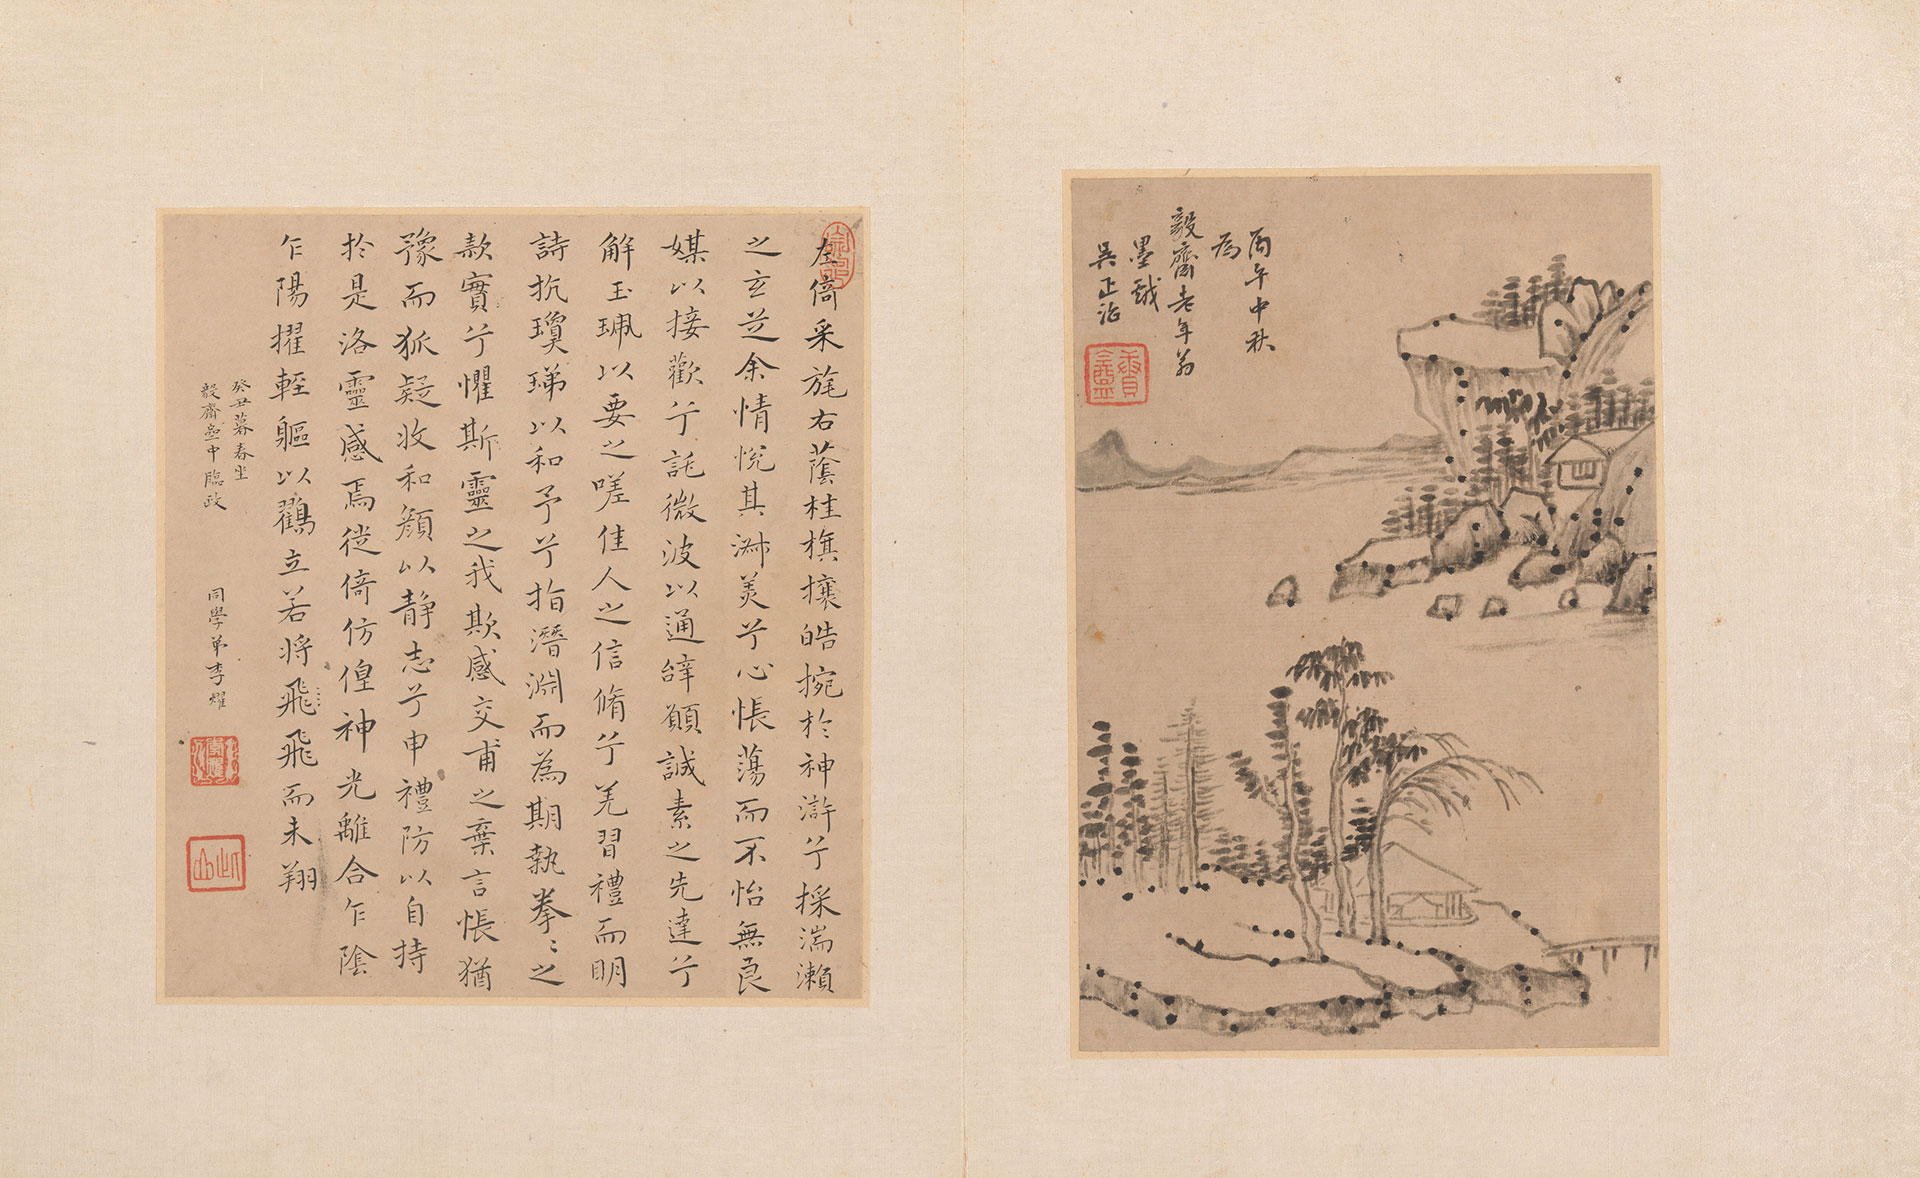 Álbum de pintura y caligrafía para Maoshu, 1666-80. The MET